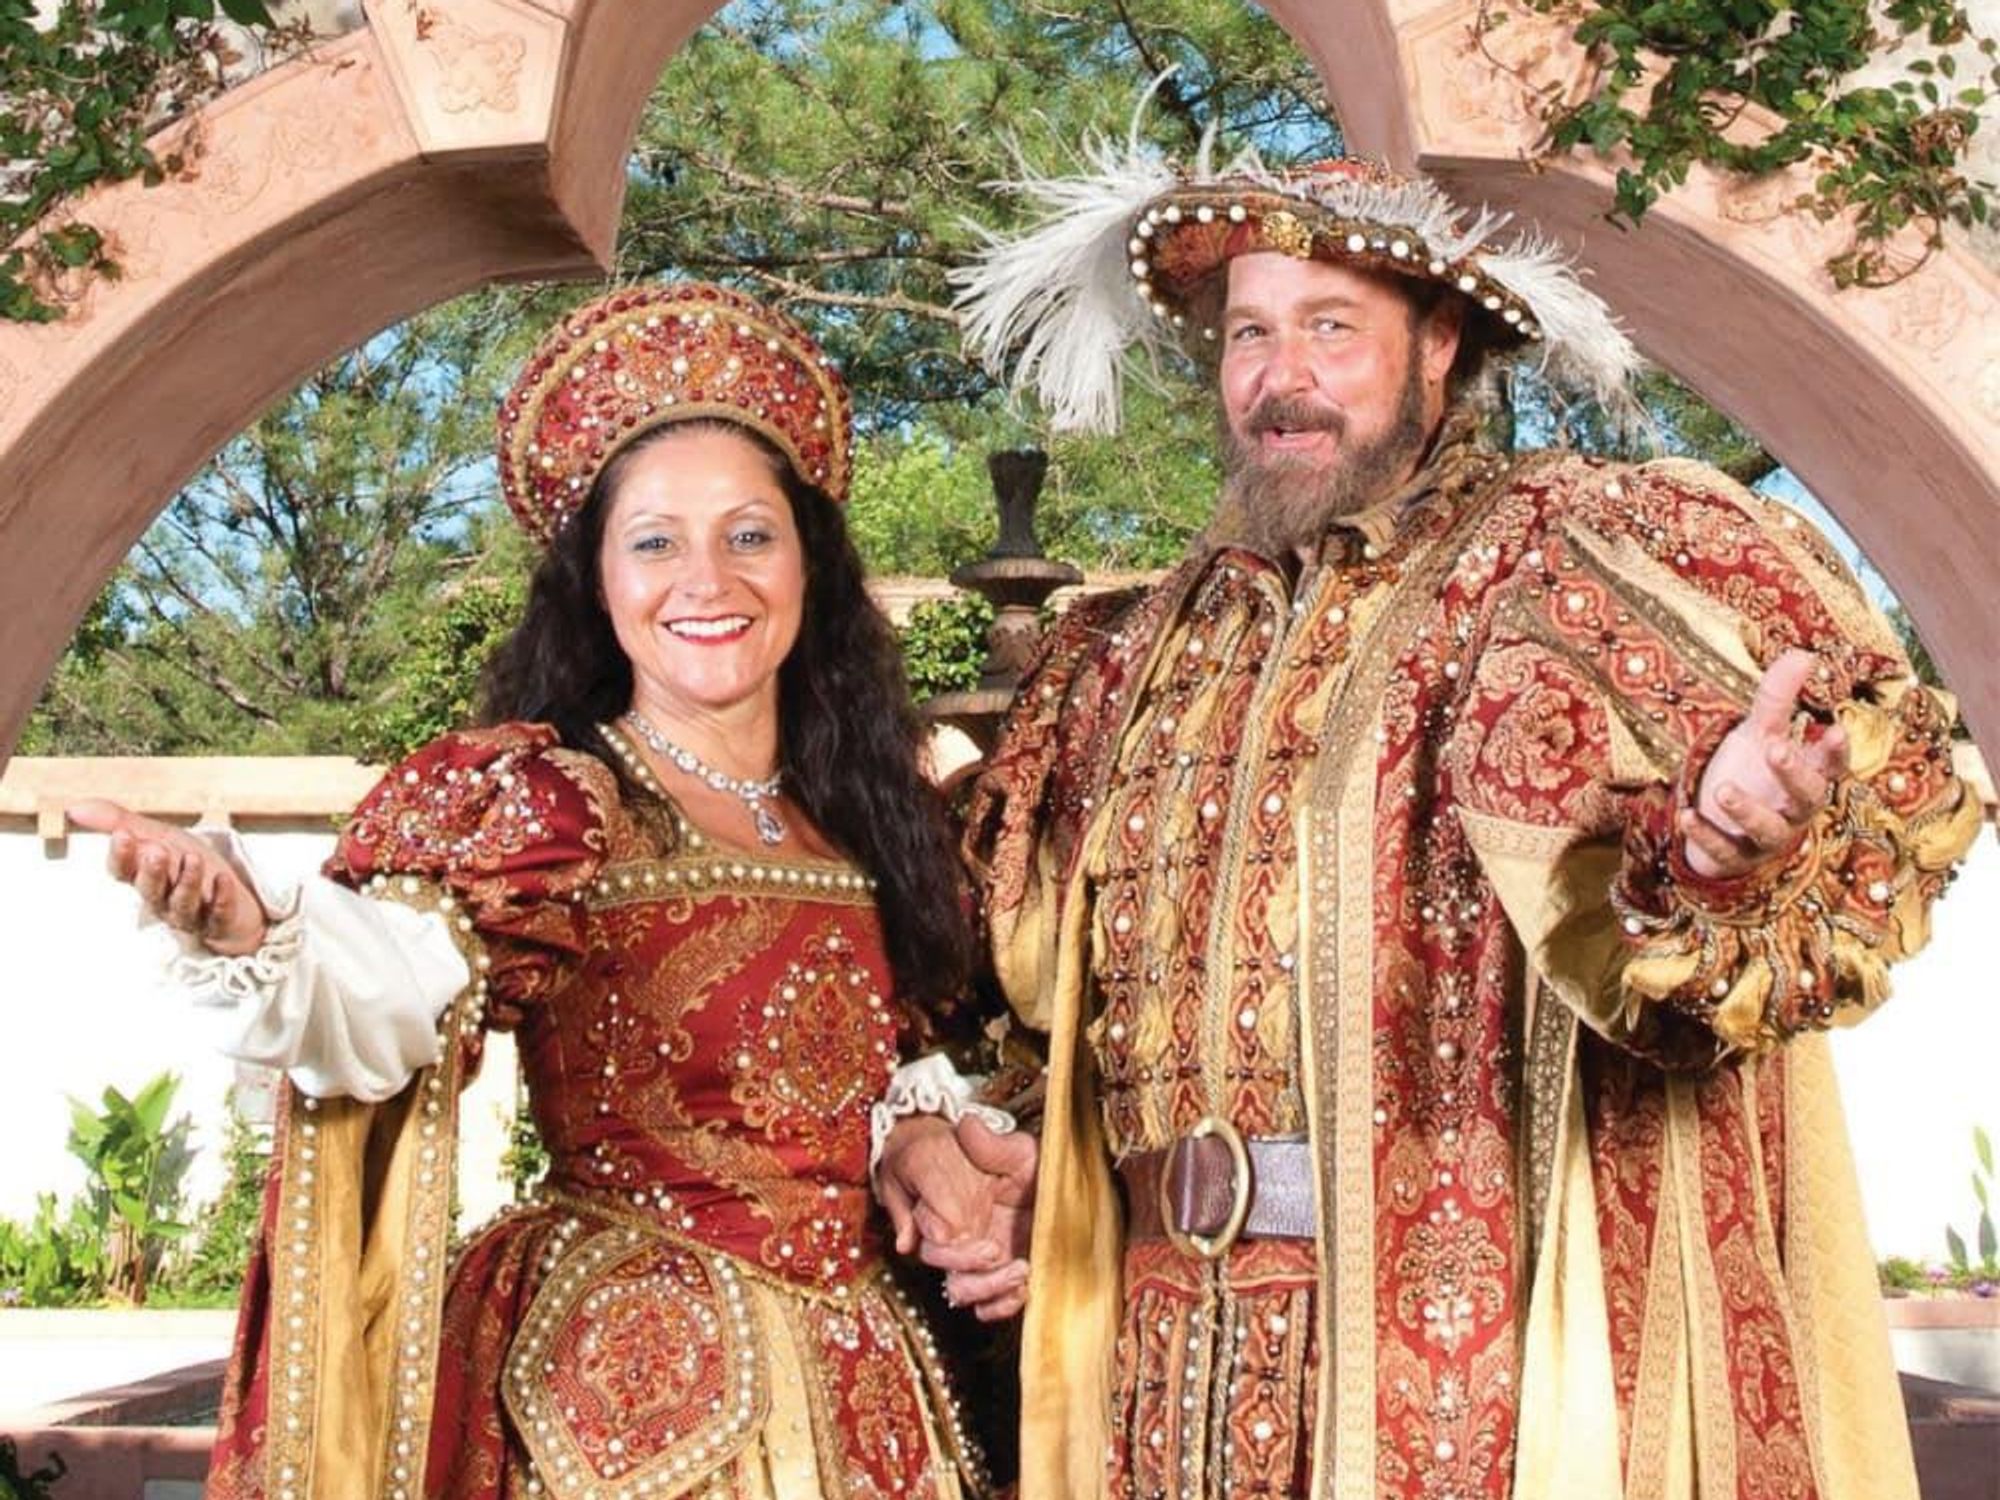 Texas Renaissance Festival king and queen